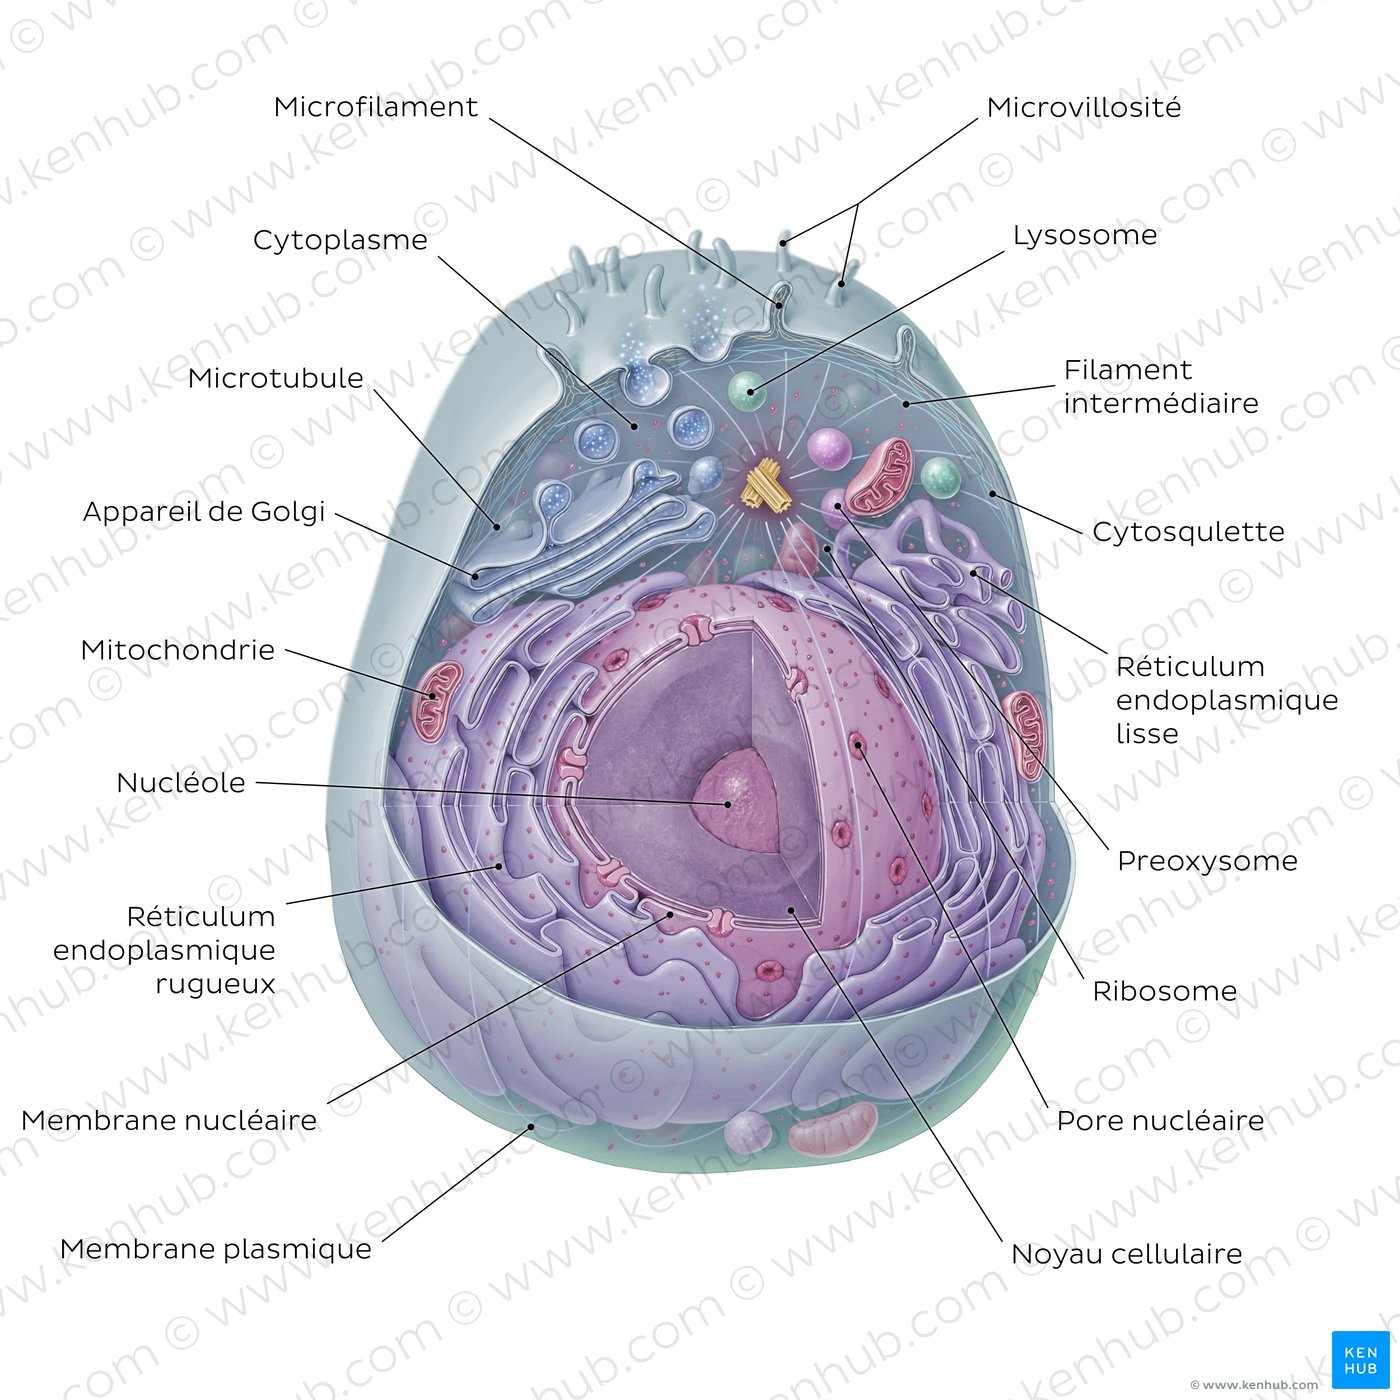 Cellule eucaryote (schéma)